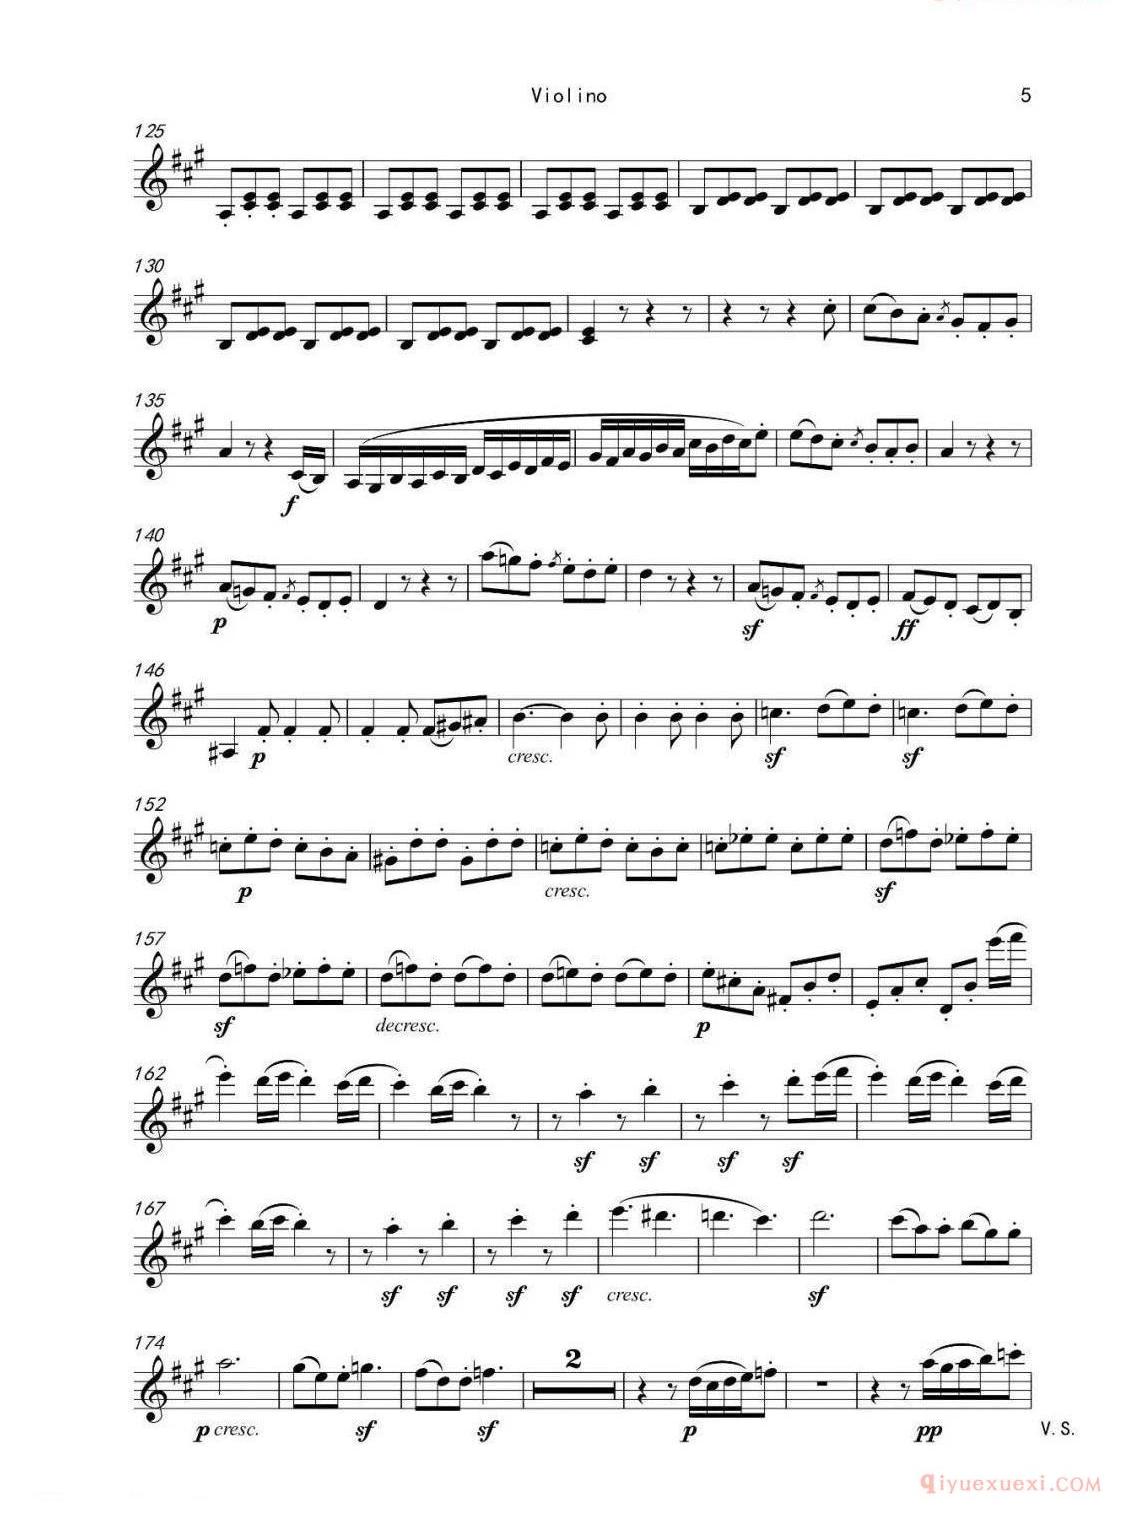 贝多芬250周年诞辰纪念（四）A大调小提琴奏鸣曲op. 12 No. 2第一乐章